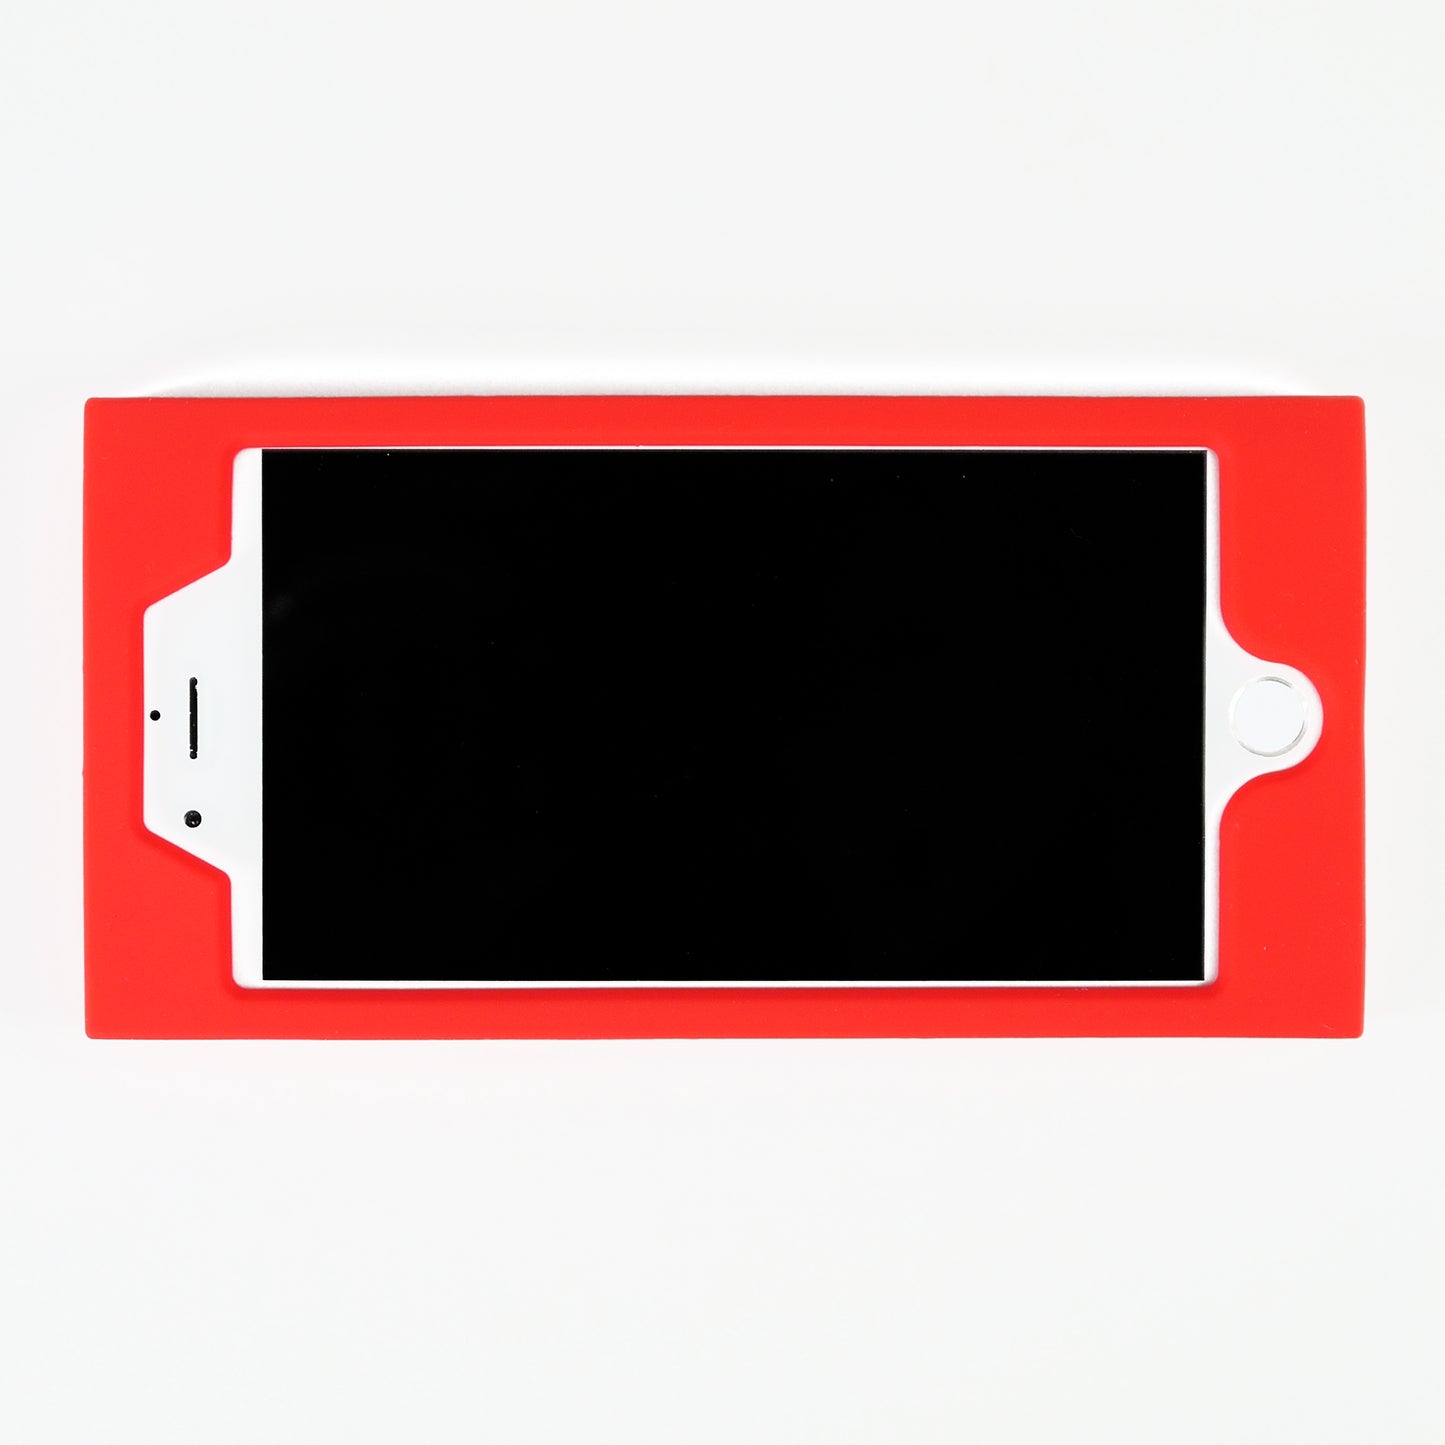 iPhone 7 Plus/8 Plus Simple Case - Belibala (Red)